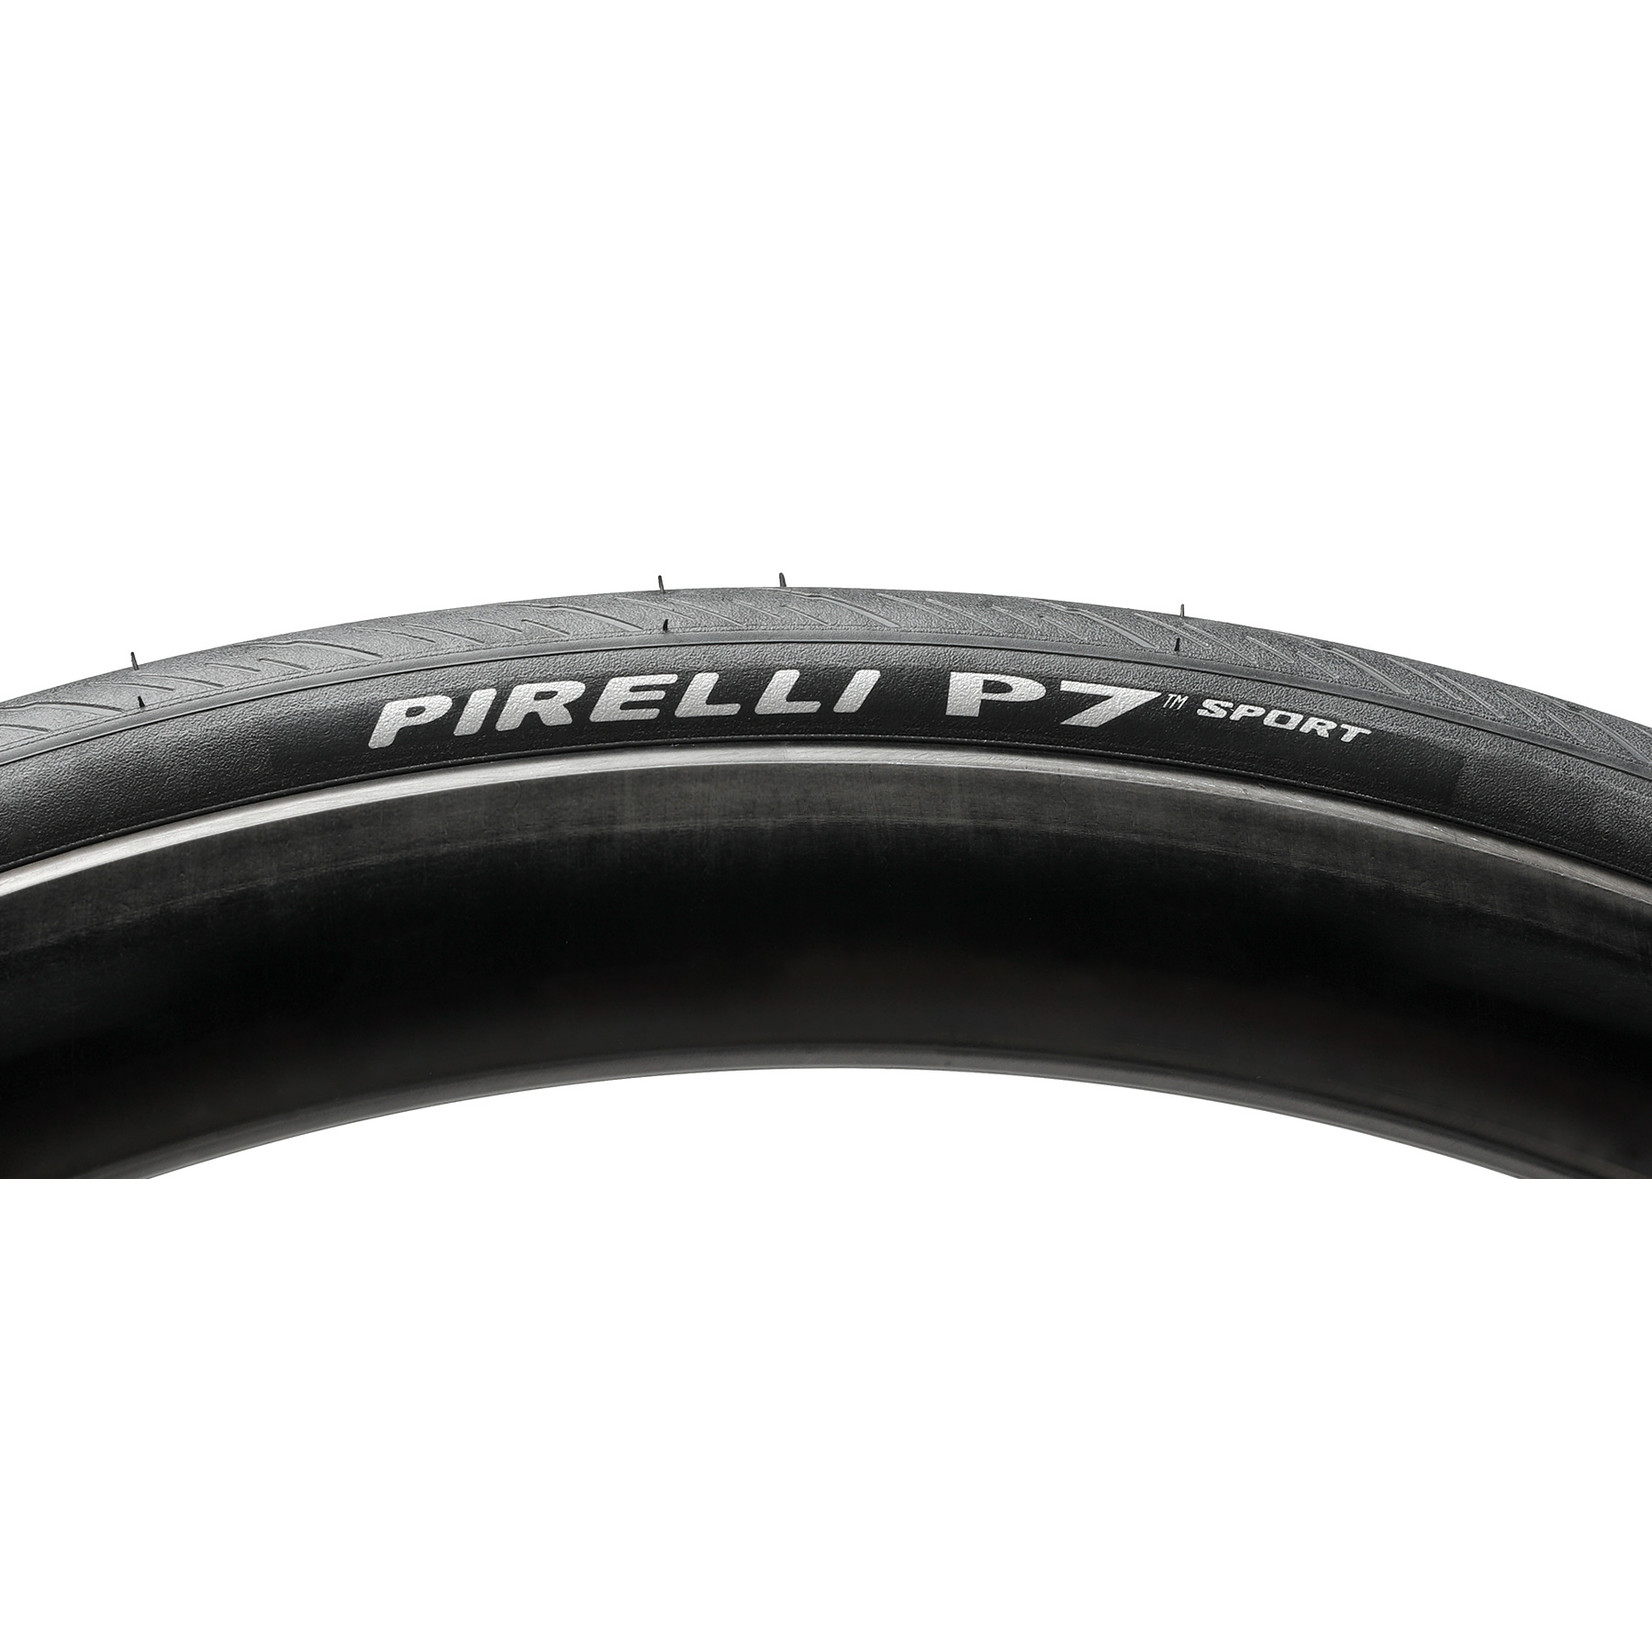 Pirelli Pirelli, P7 Sport, Road Tire, 700x28C, Folding, Clincher